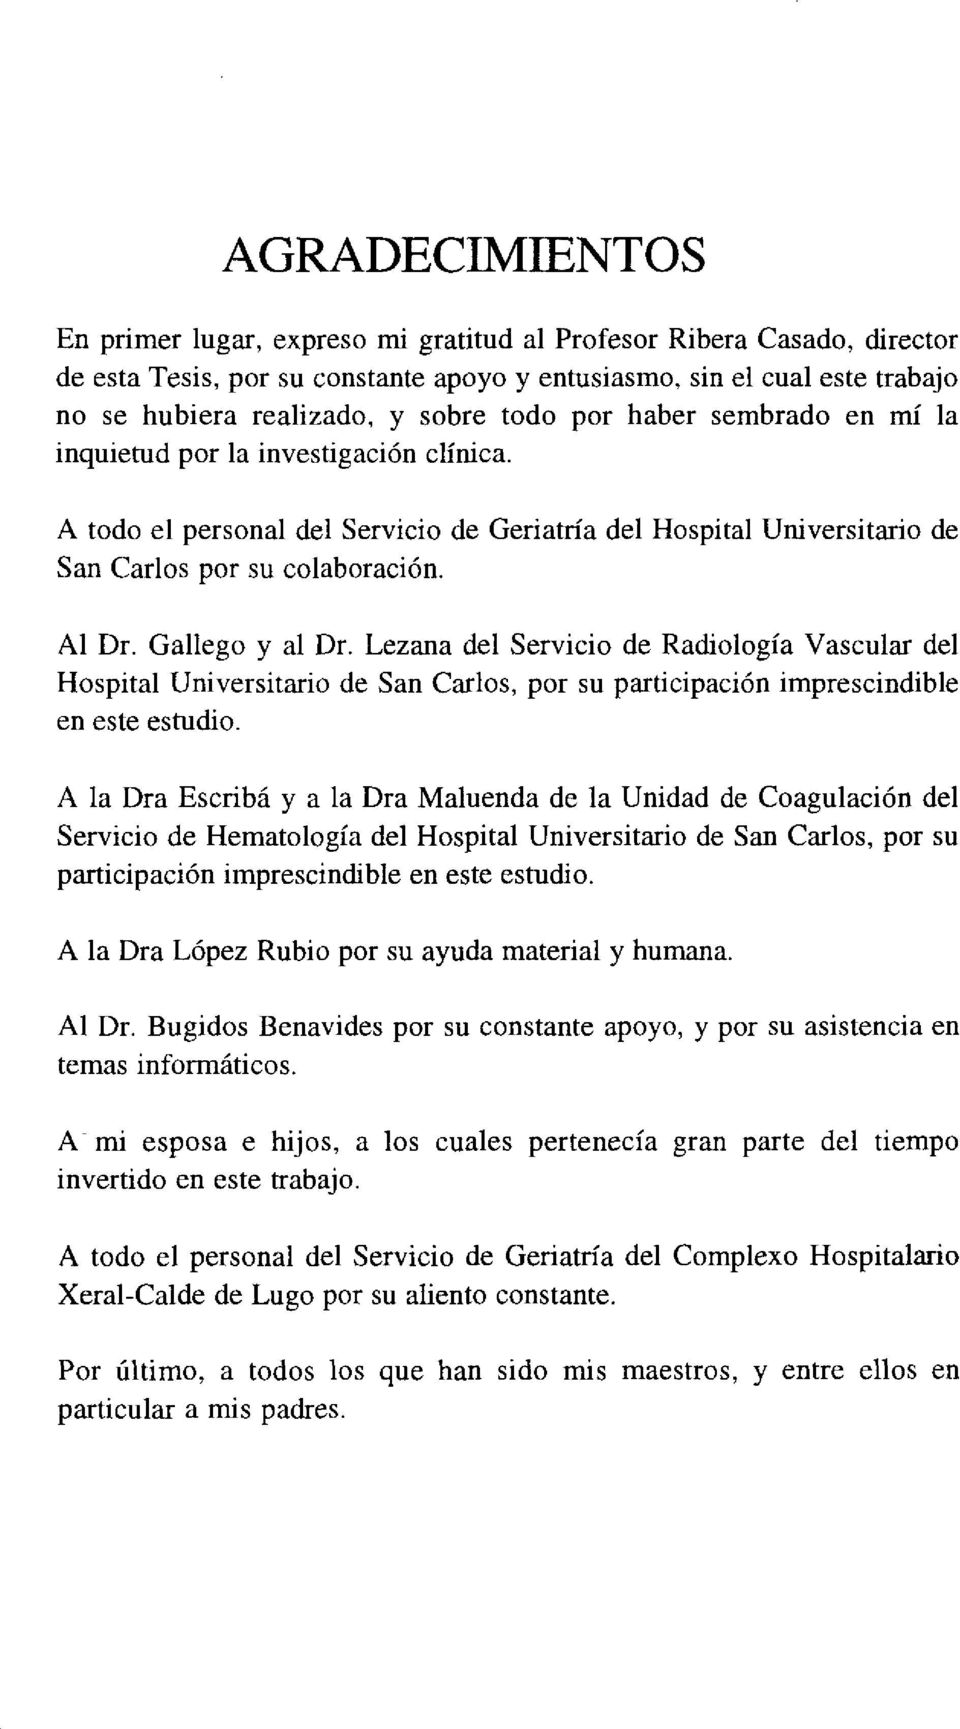 Gallego y al Dr. Lezana del Servicio de Radiología Vascular del Hospital Universitario de San Carlos, por su participación imprescindible en este estudio.